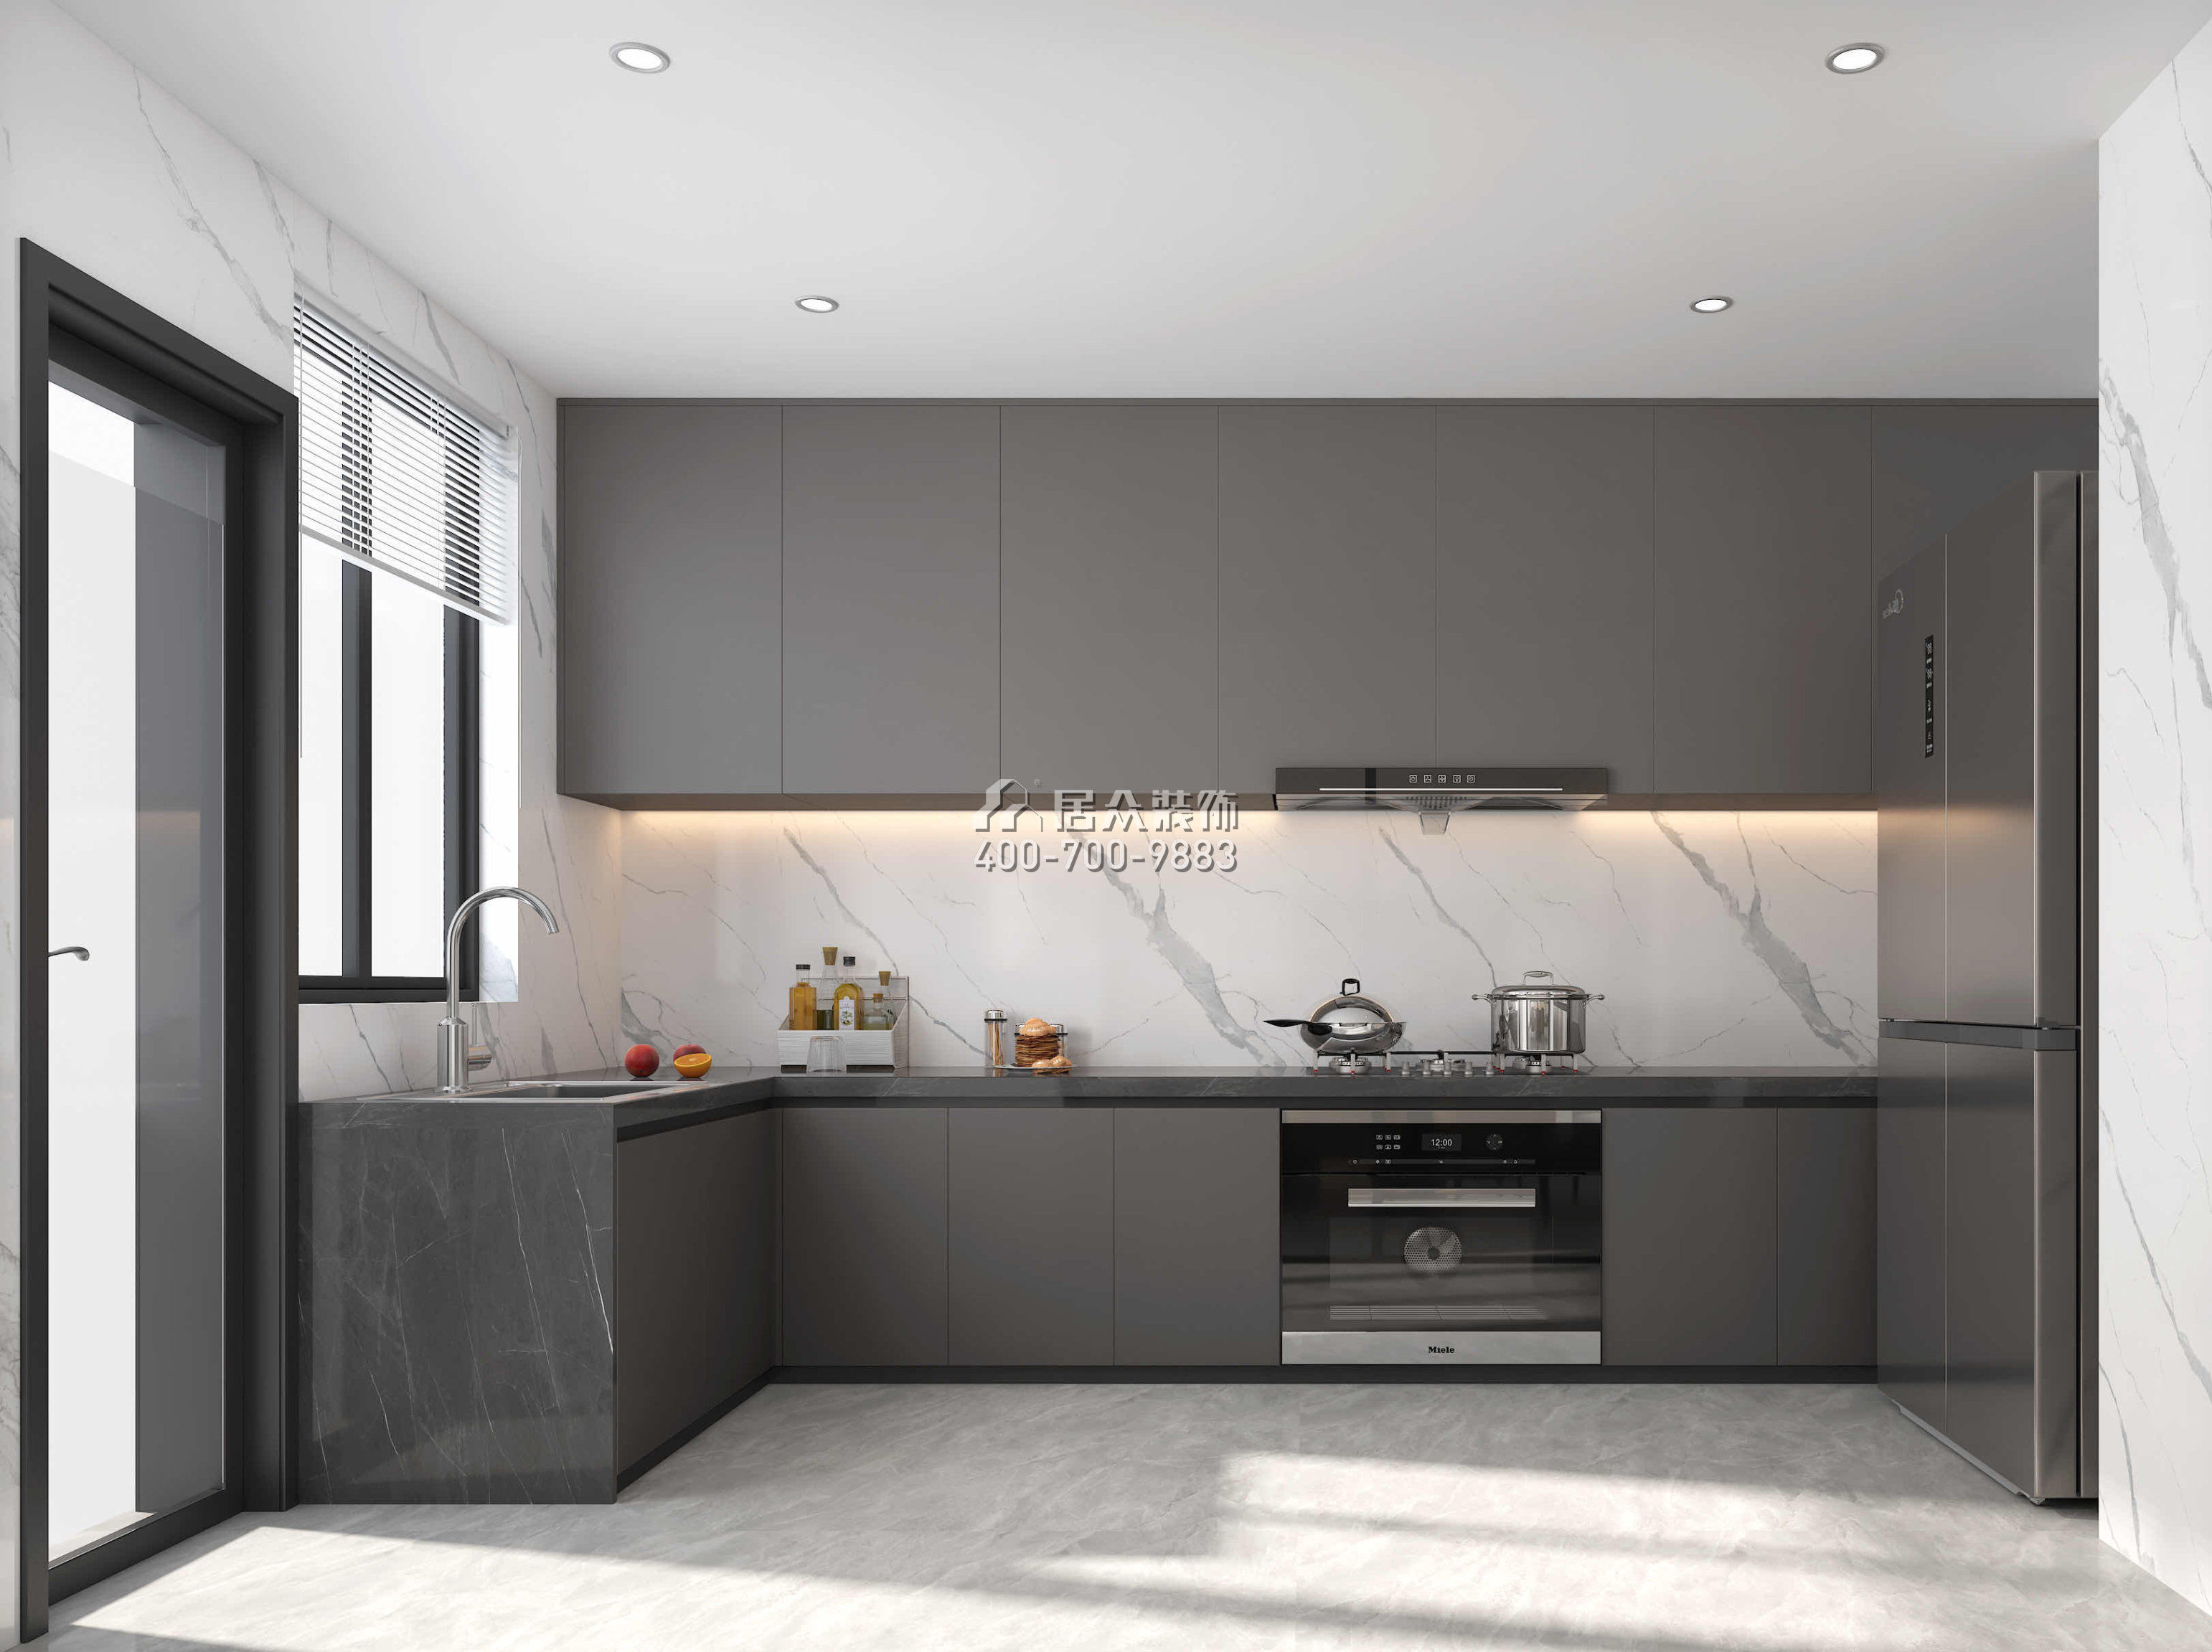 壹方中心175平方米現代簡約風格平層戶型廚房裝修效果圖